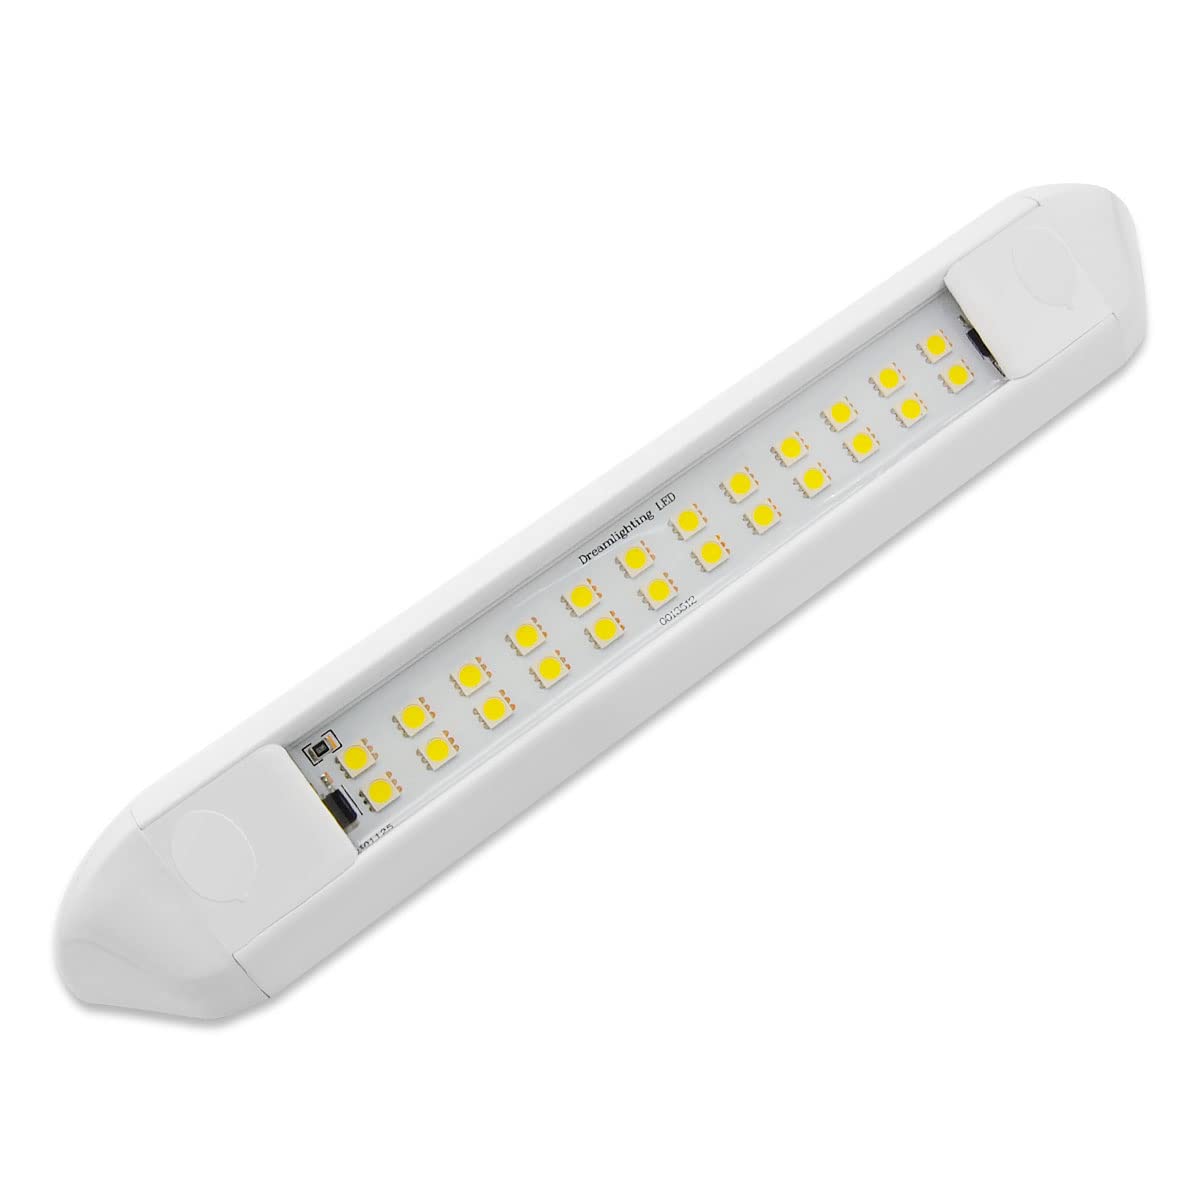 Dream lighting Vorzeltleuchte LED Wohnmobil Wohnwagen 12v Außenlampe Markise Lampe IP66 Aluminium Weiß